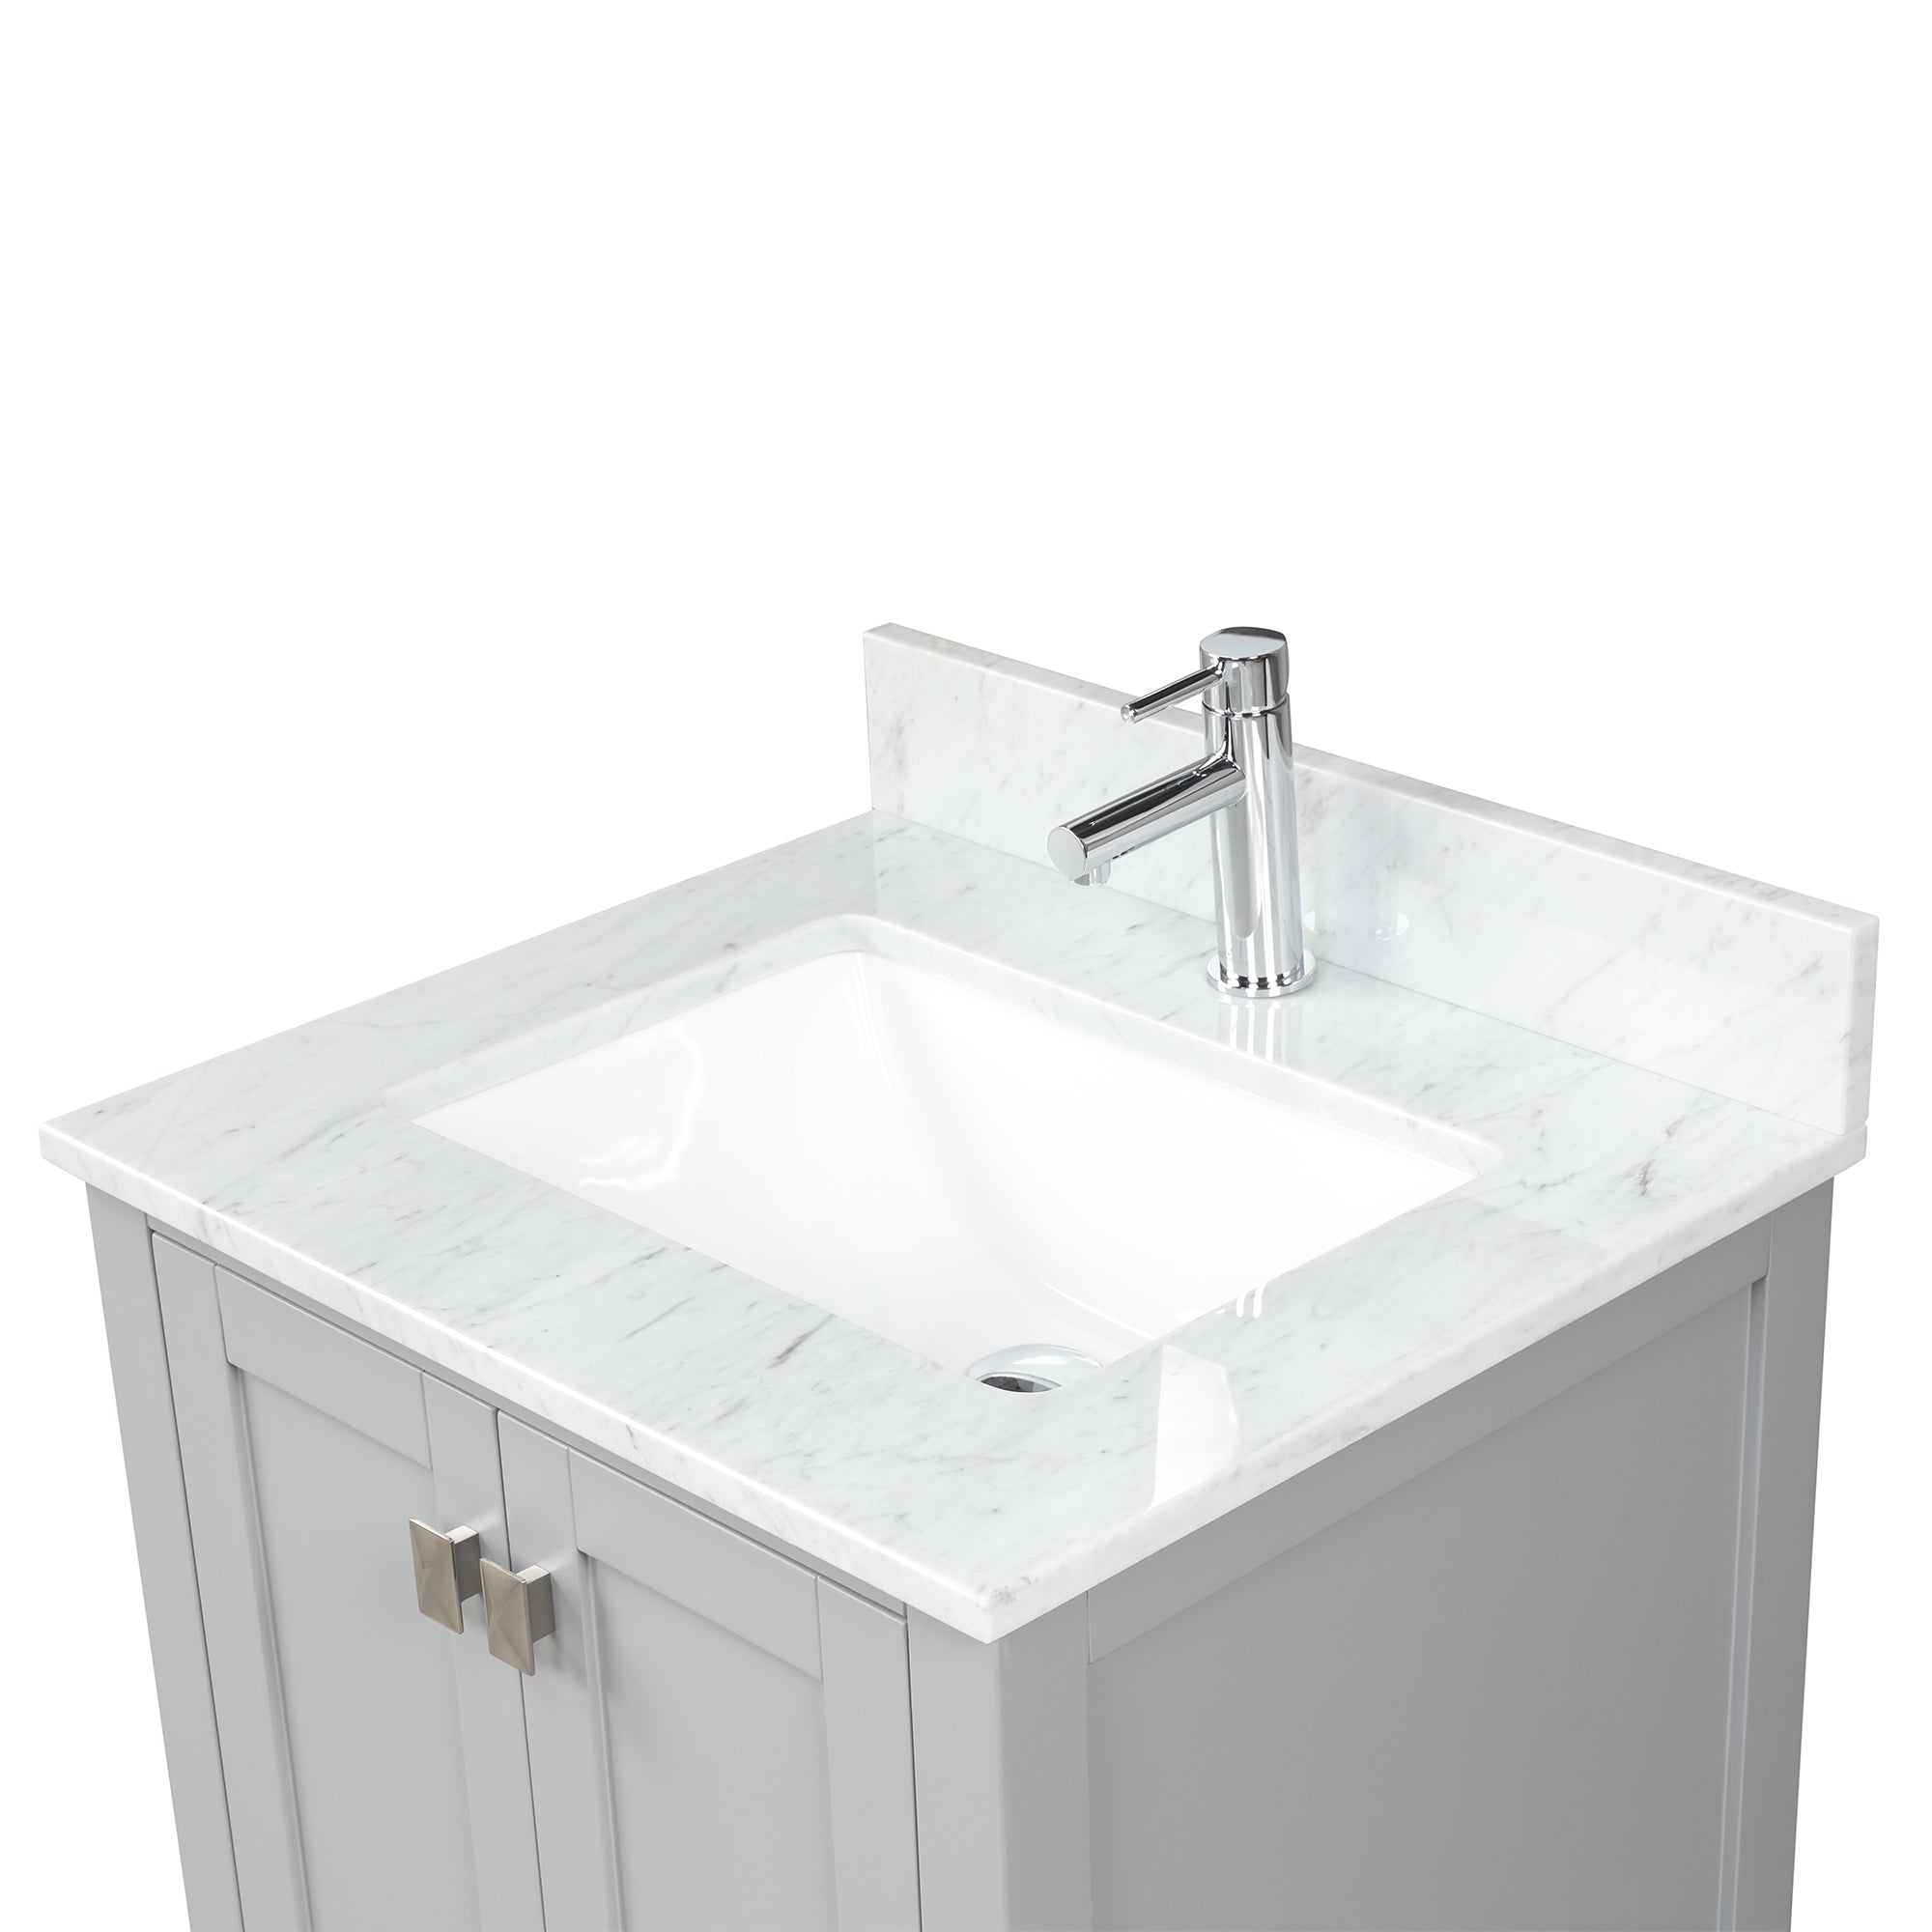 Geneva 24" Grey Bathroom Vanity with Sink - Contemporary Bathroom Vanity